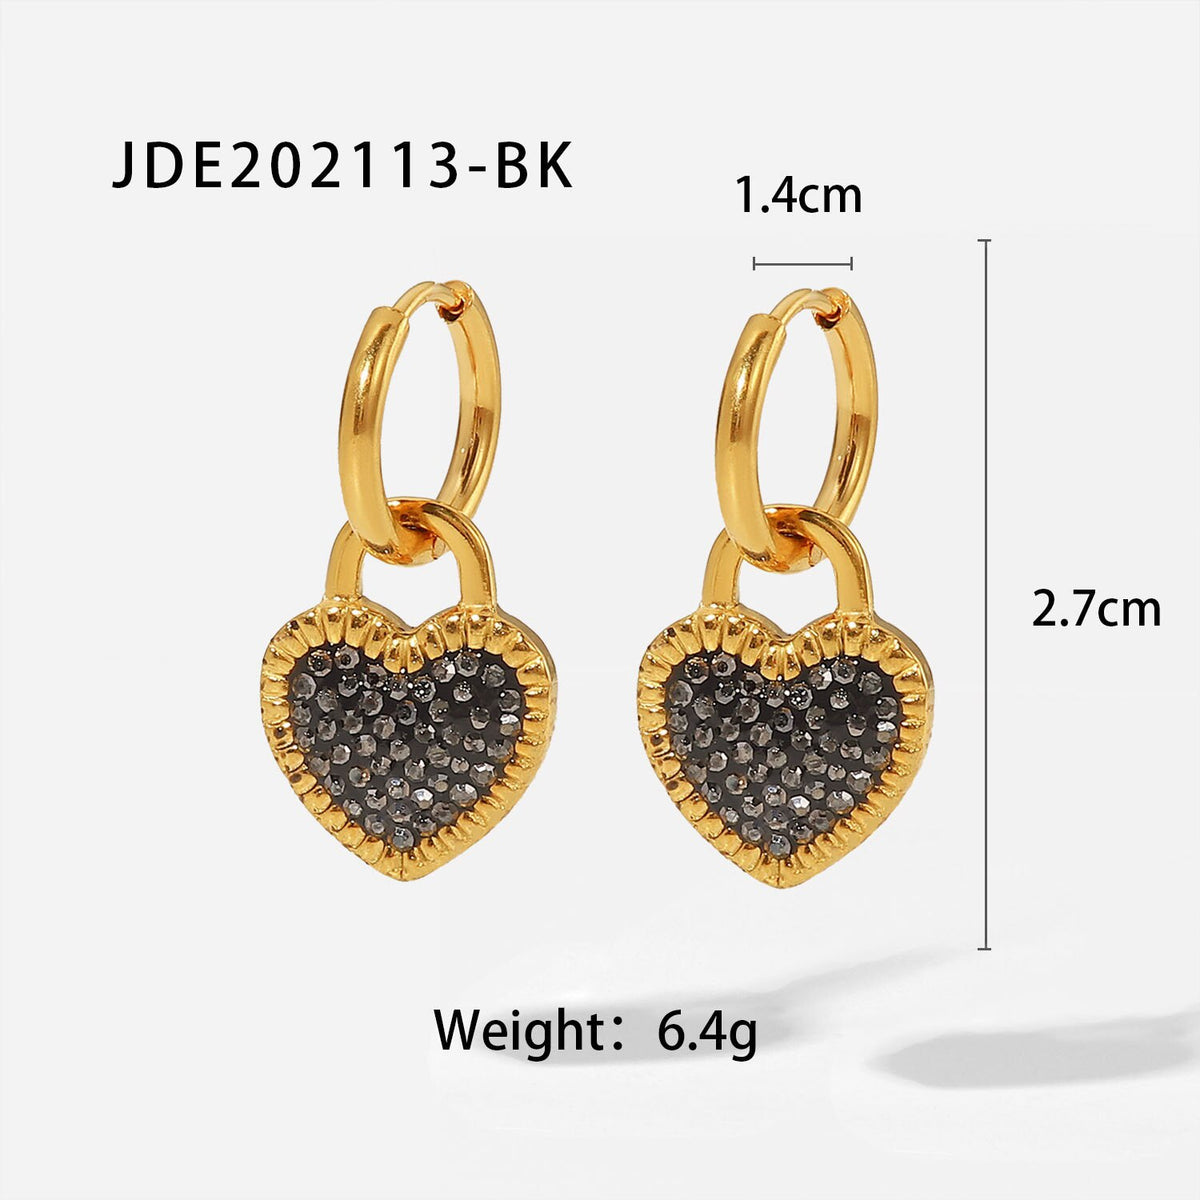 Stainless Steel 18K Gold plated Hoop Earrings jewelry party Girls Cubic Zirconia Heart Hoop Earrings for Women